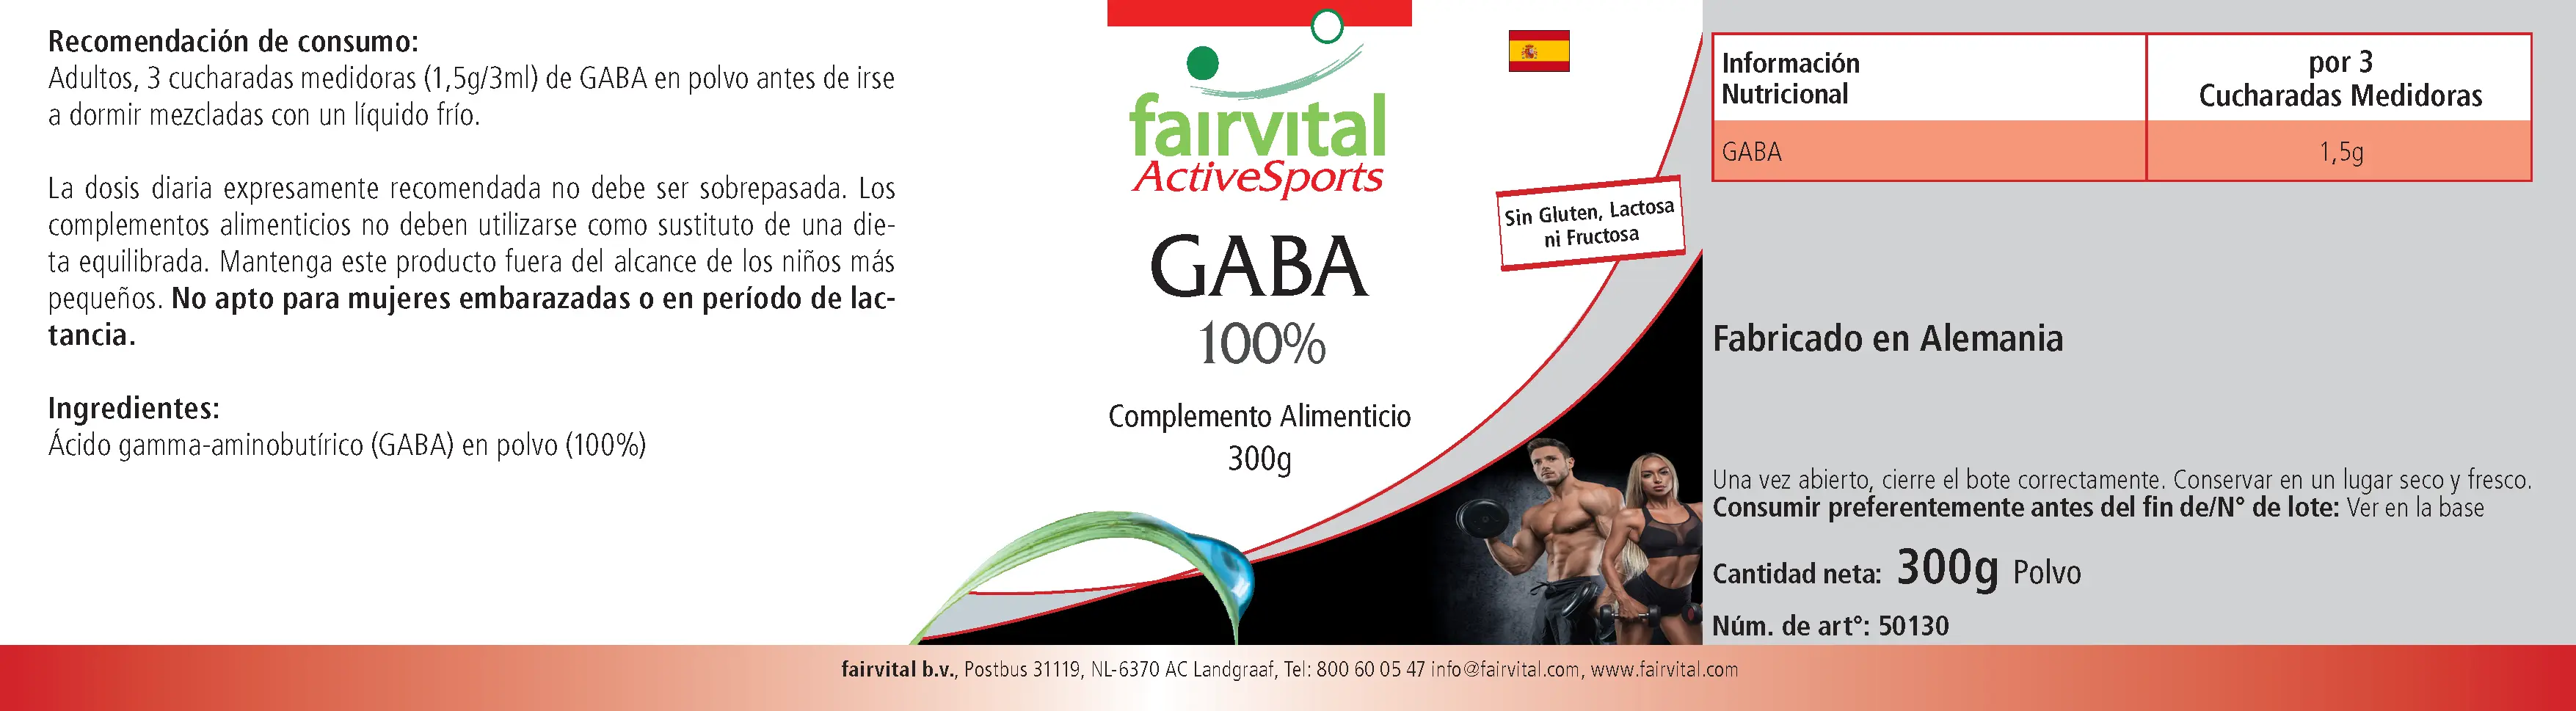 GABA 100% - 300g en poudre